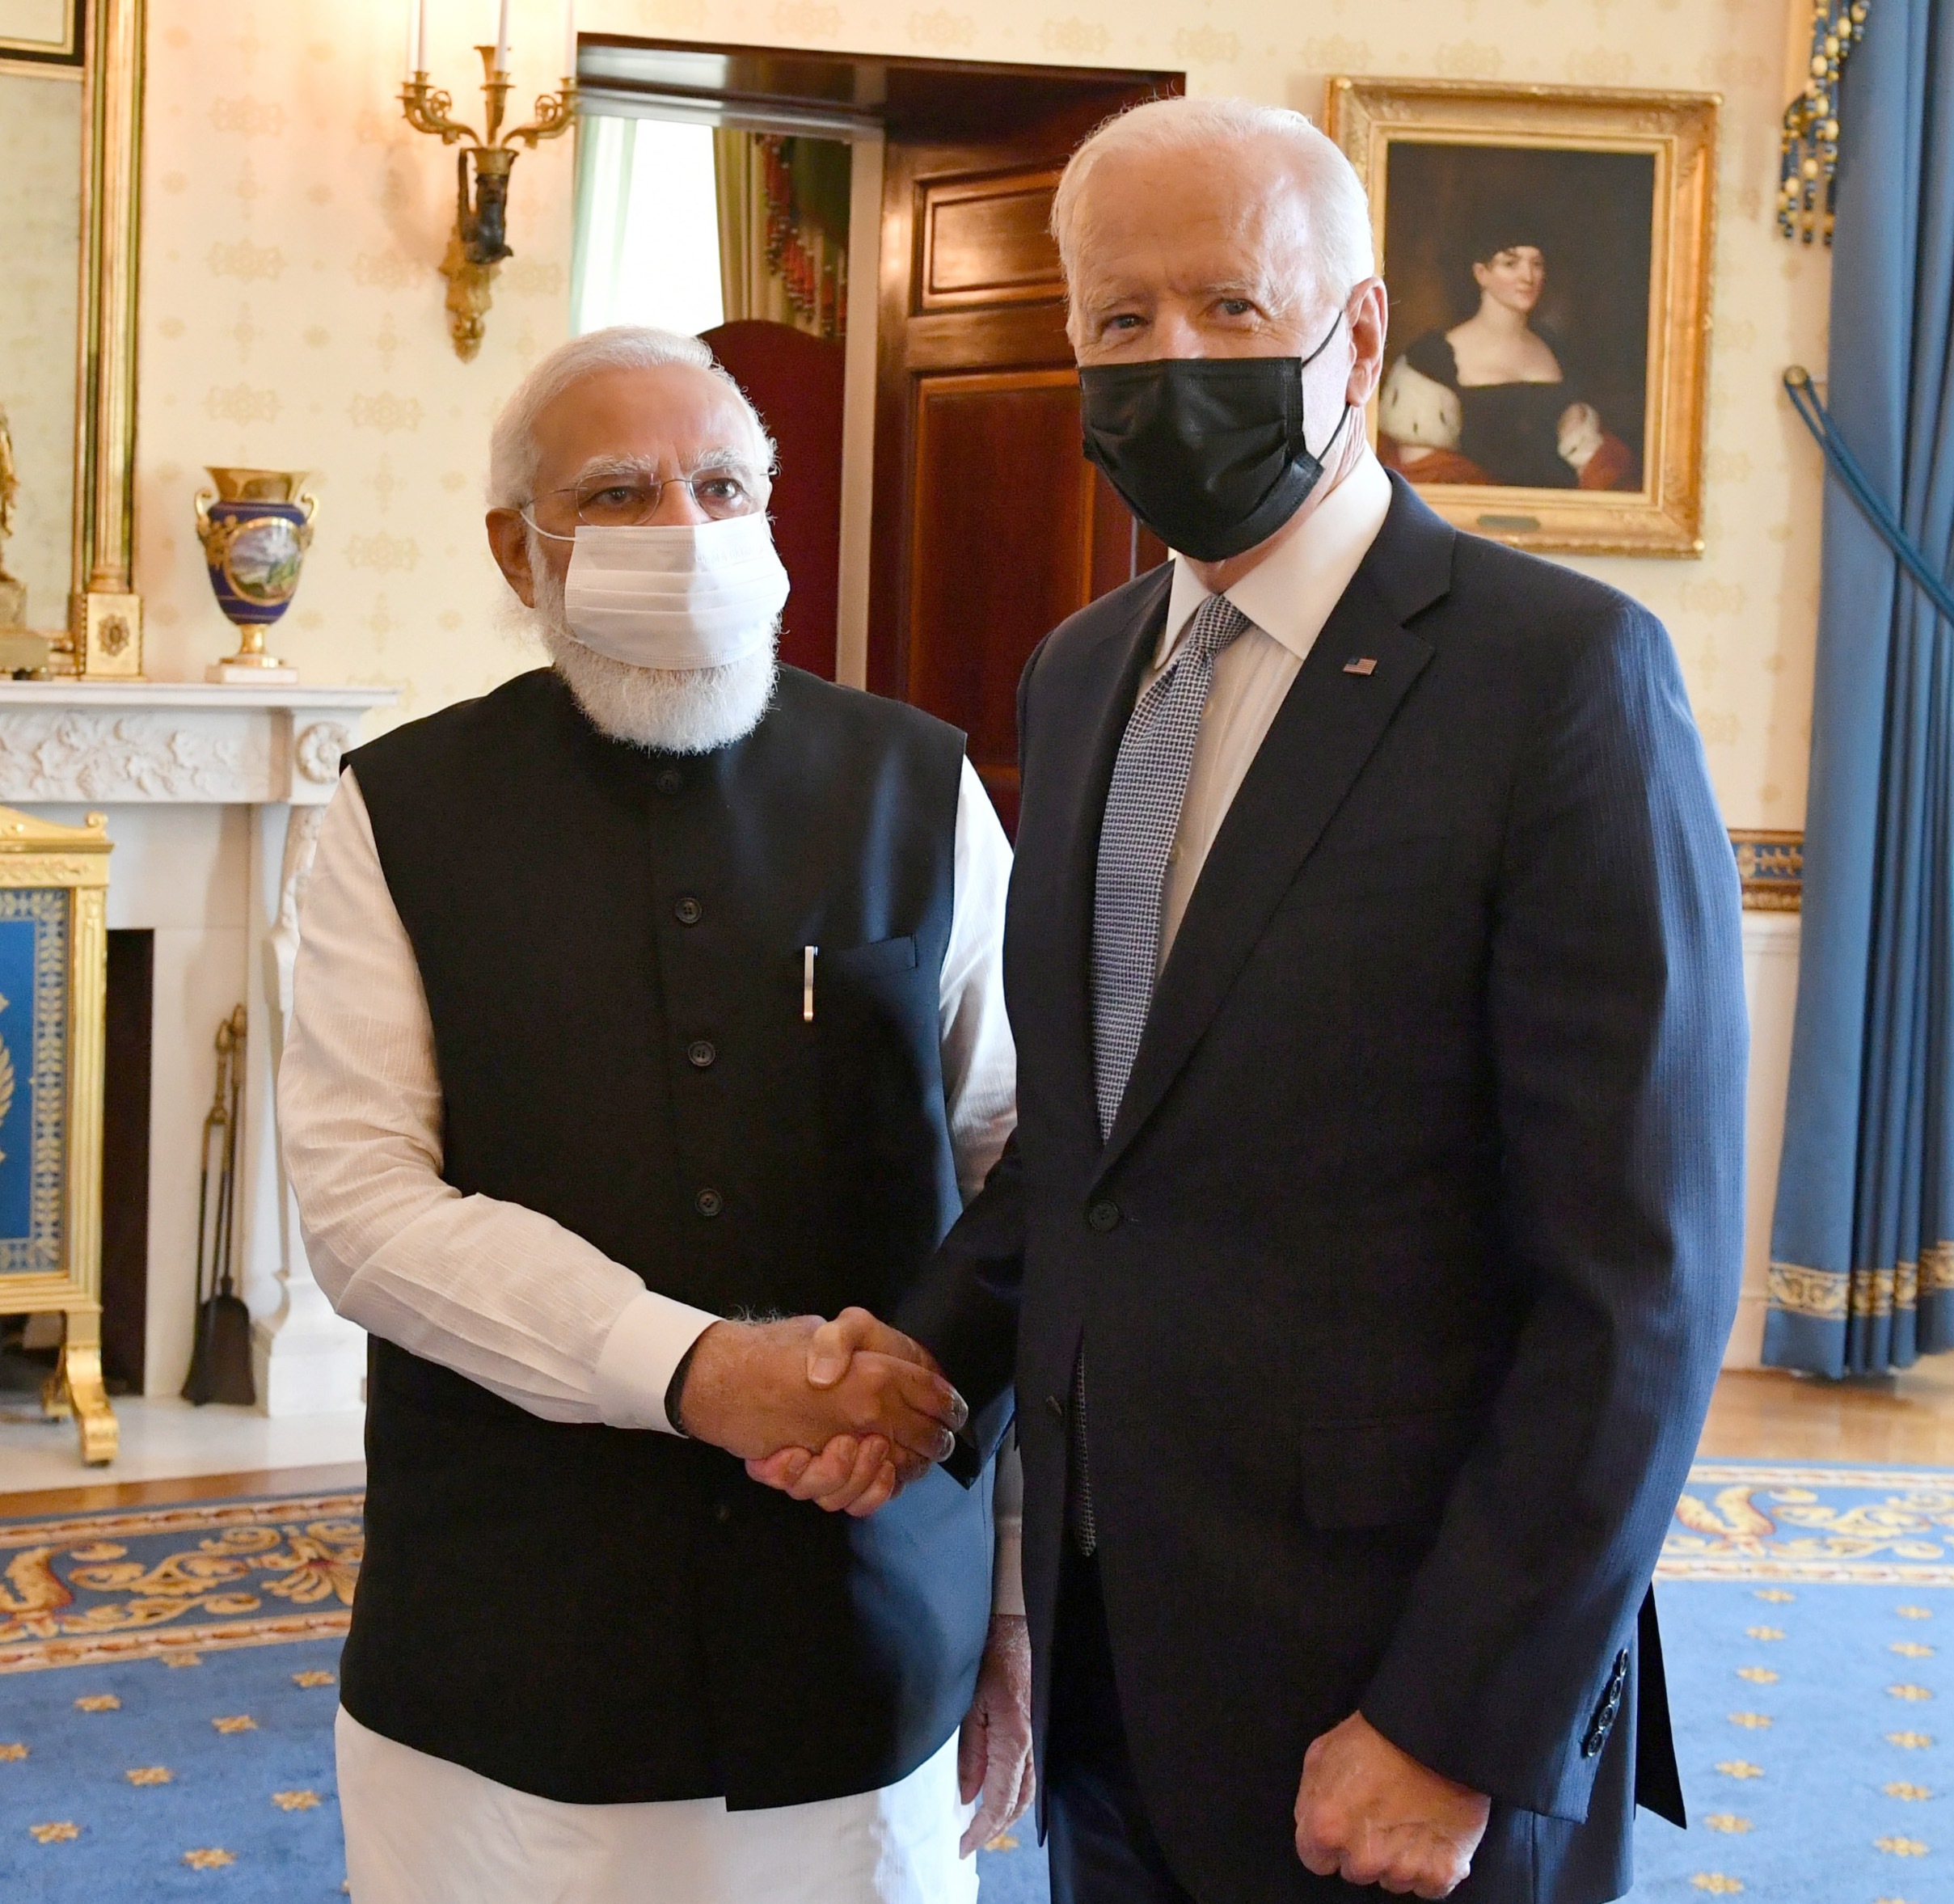 प्रधानमंत्री मोदी द्वारा लाए दस्तावेज दर्शाते हैं भारत में बाइडन अमेरिकी राष्ट्रपति से जुड़े हैं